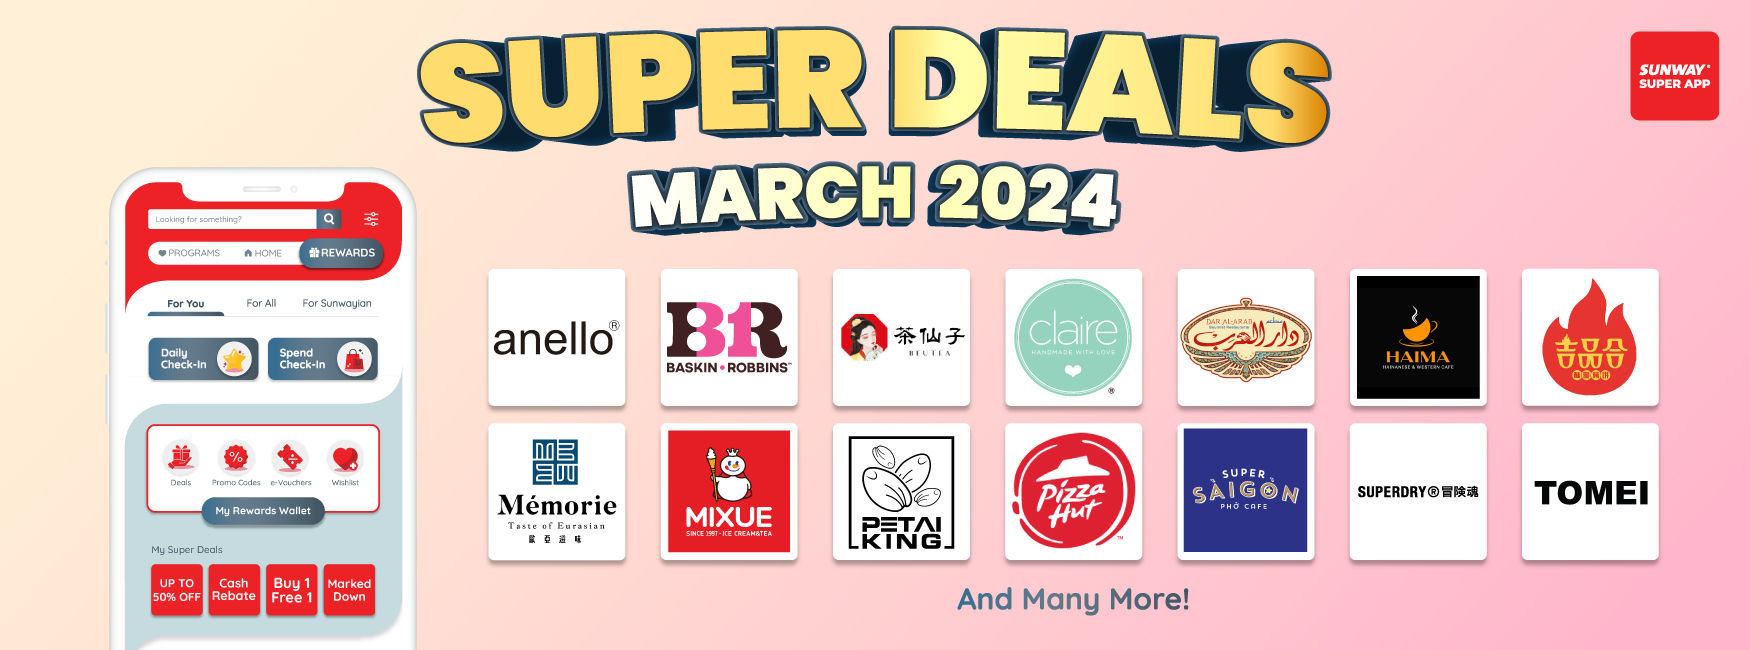 Claim your super deals now!